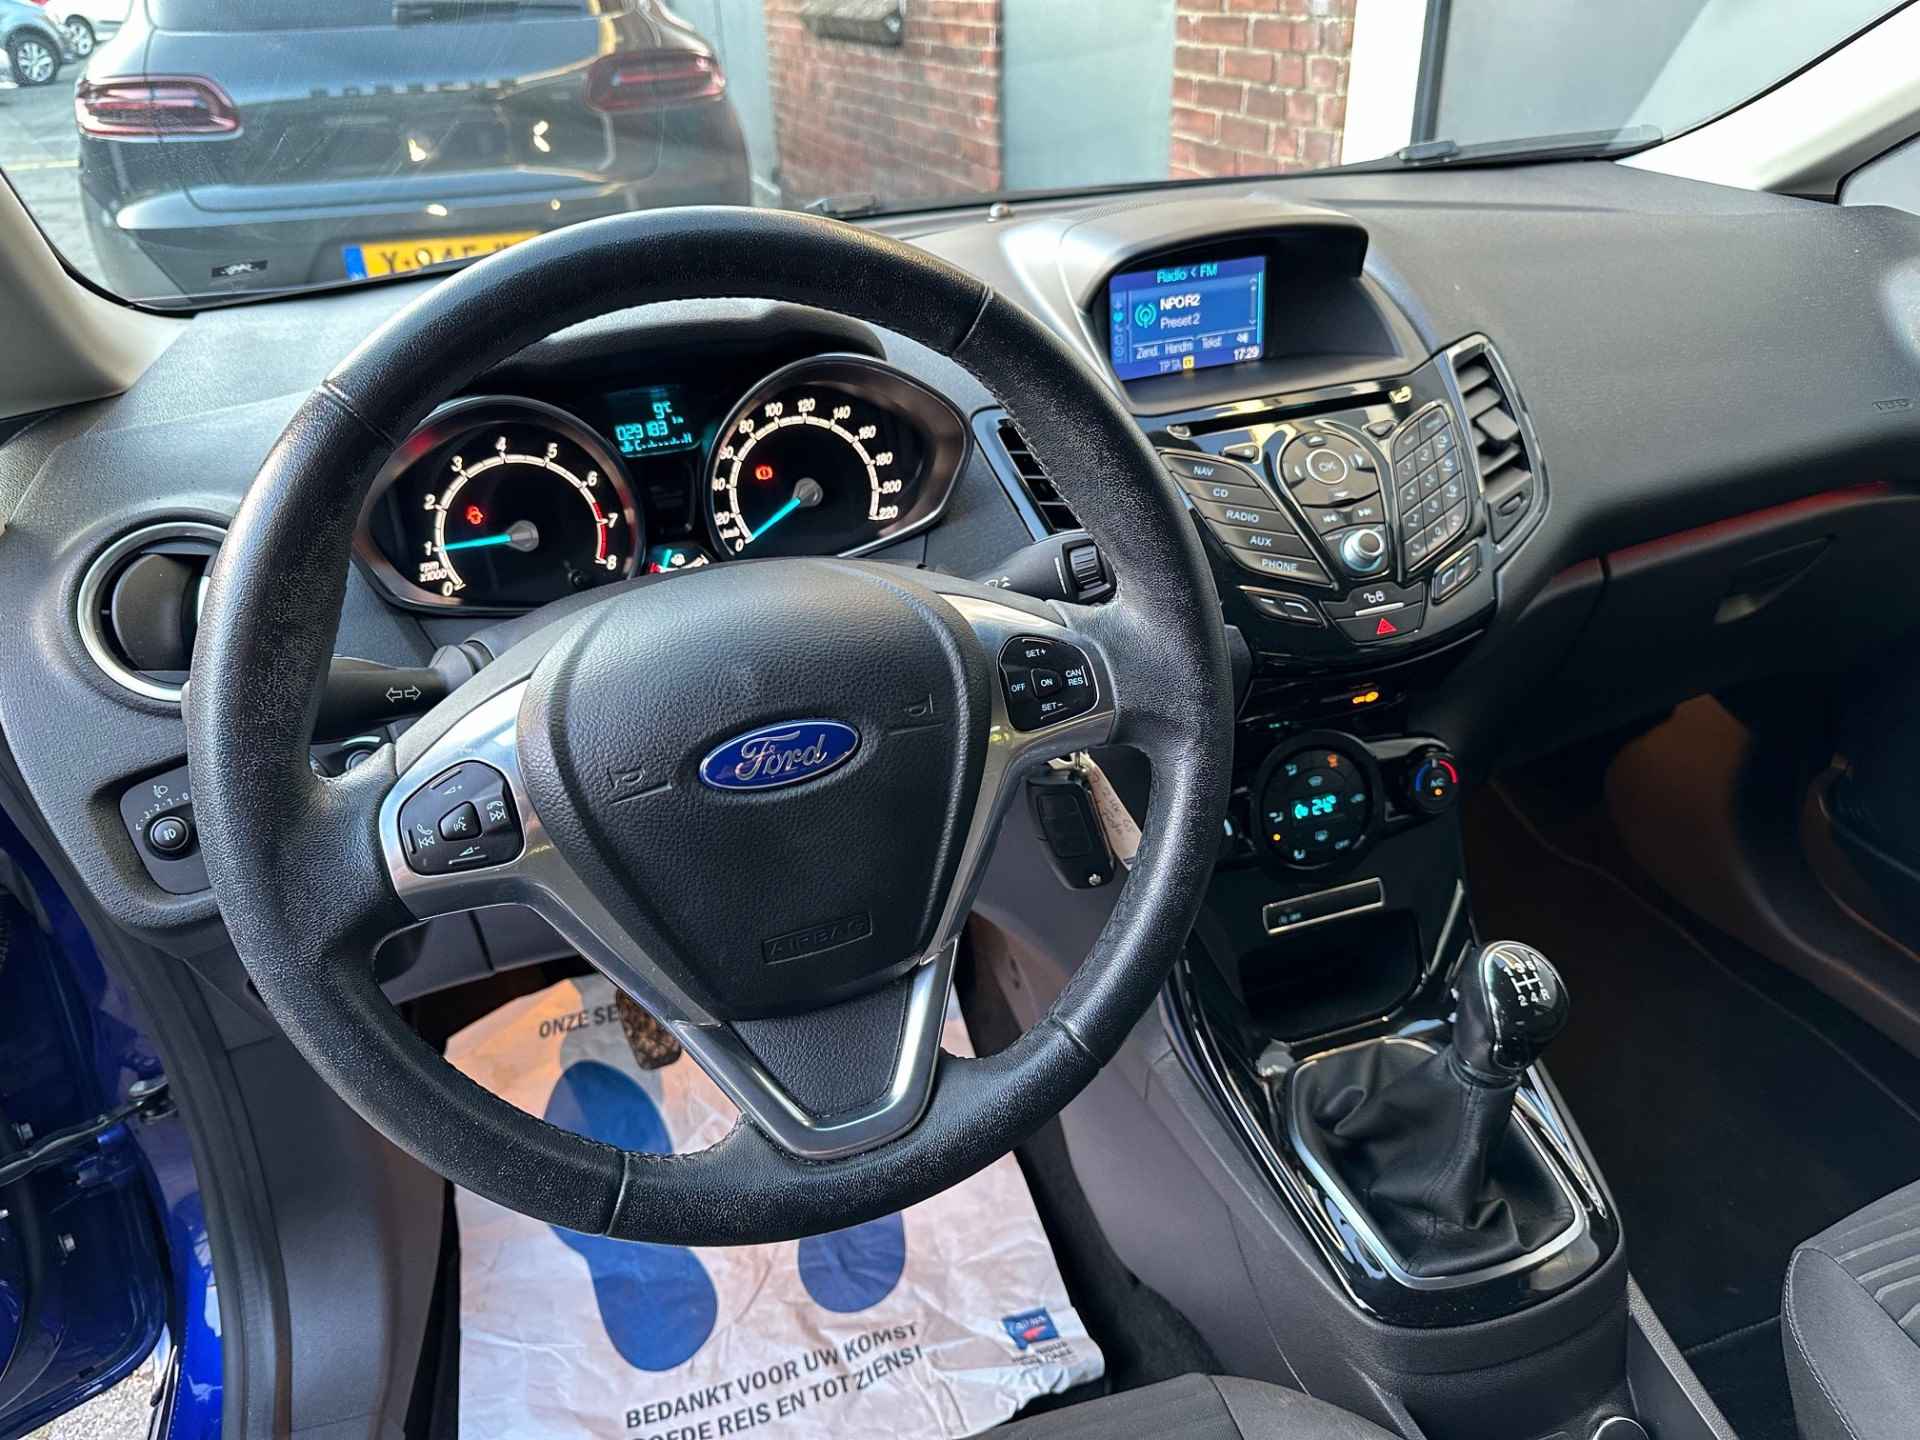 Ford Fiesta 1.0 Titanium 29.000 km Airco | lm-velgen | navigatie | BOVAG garantie | - 6/25